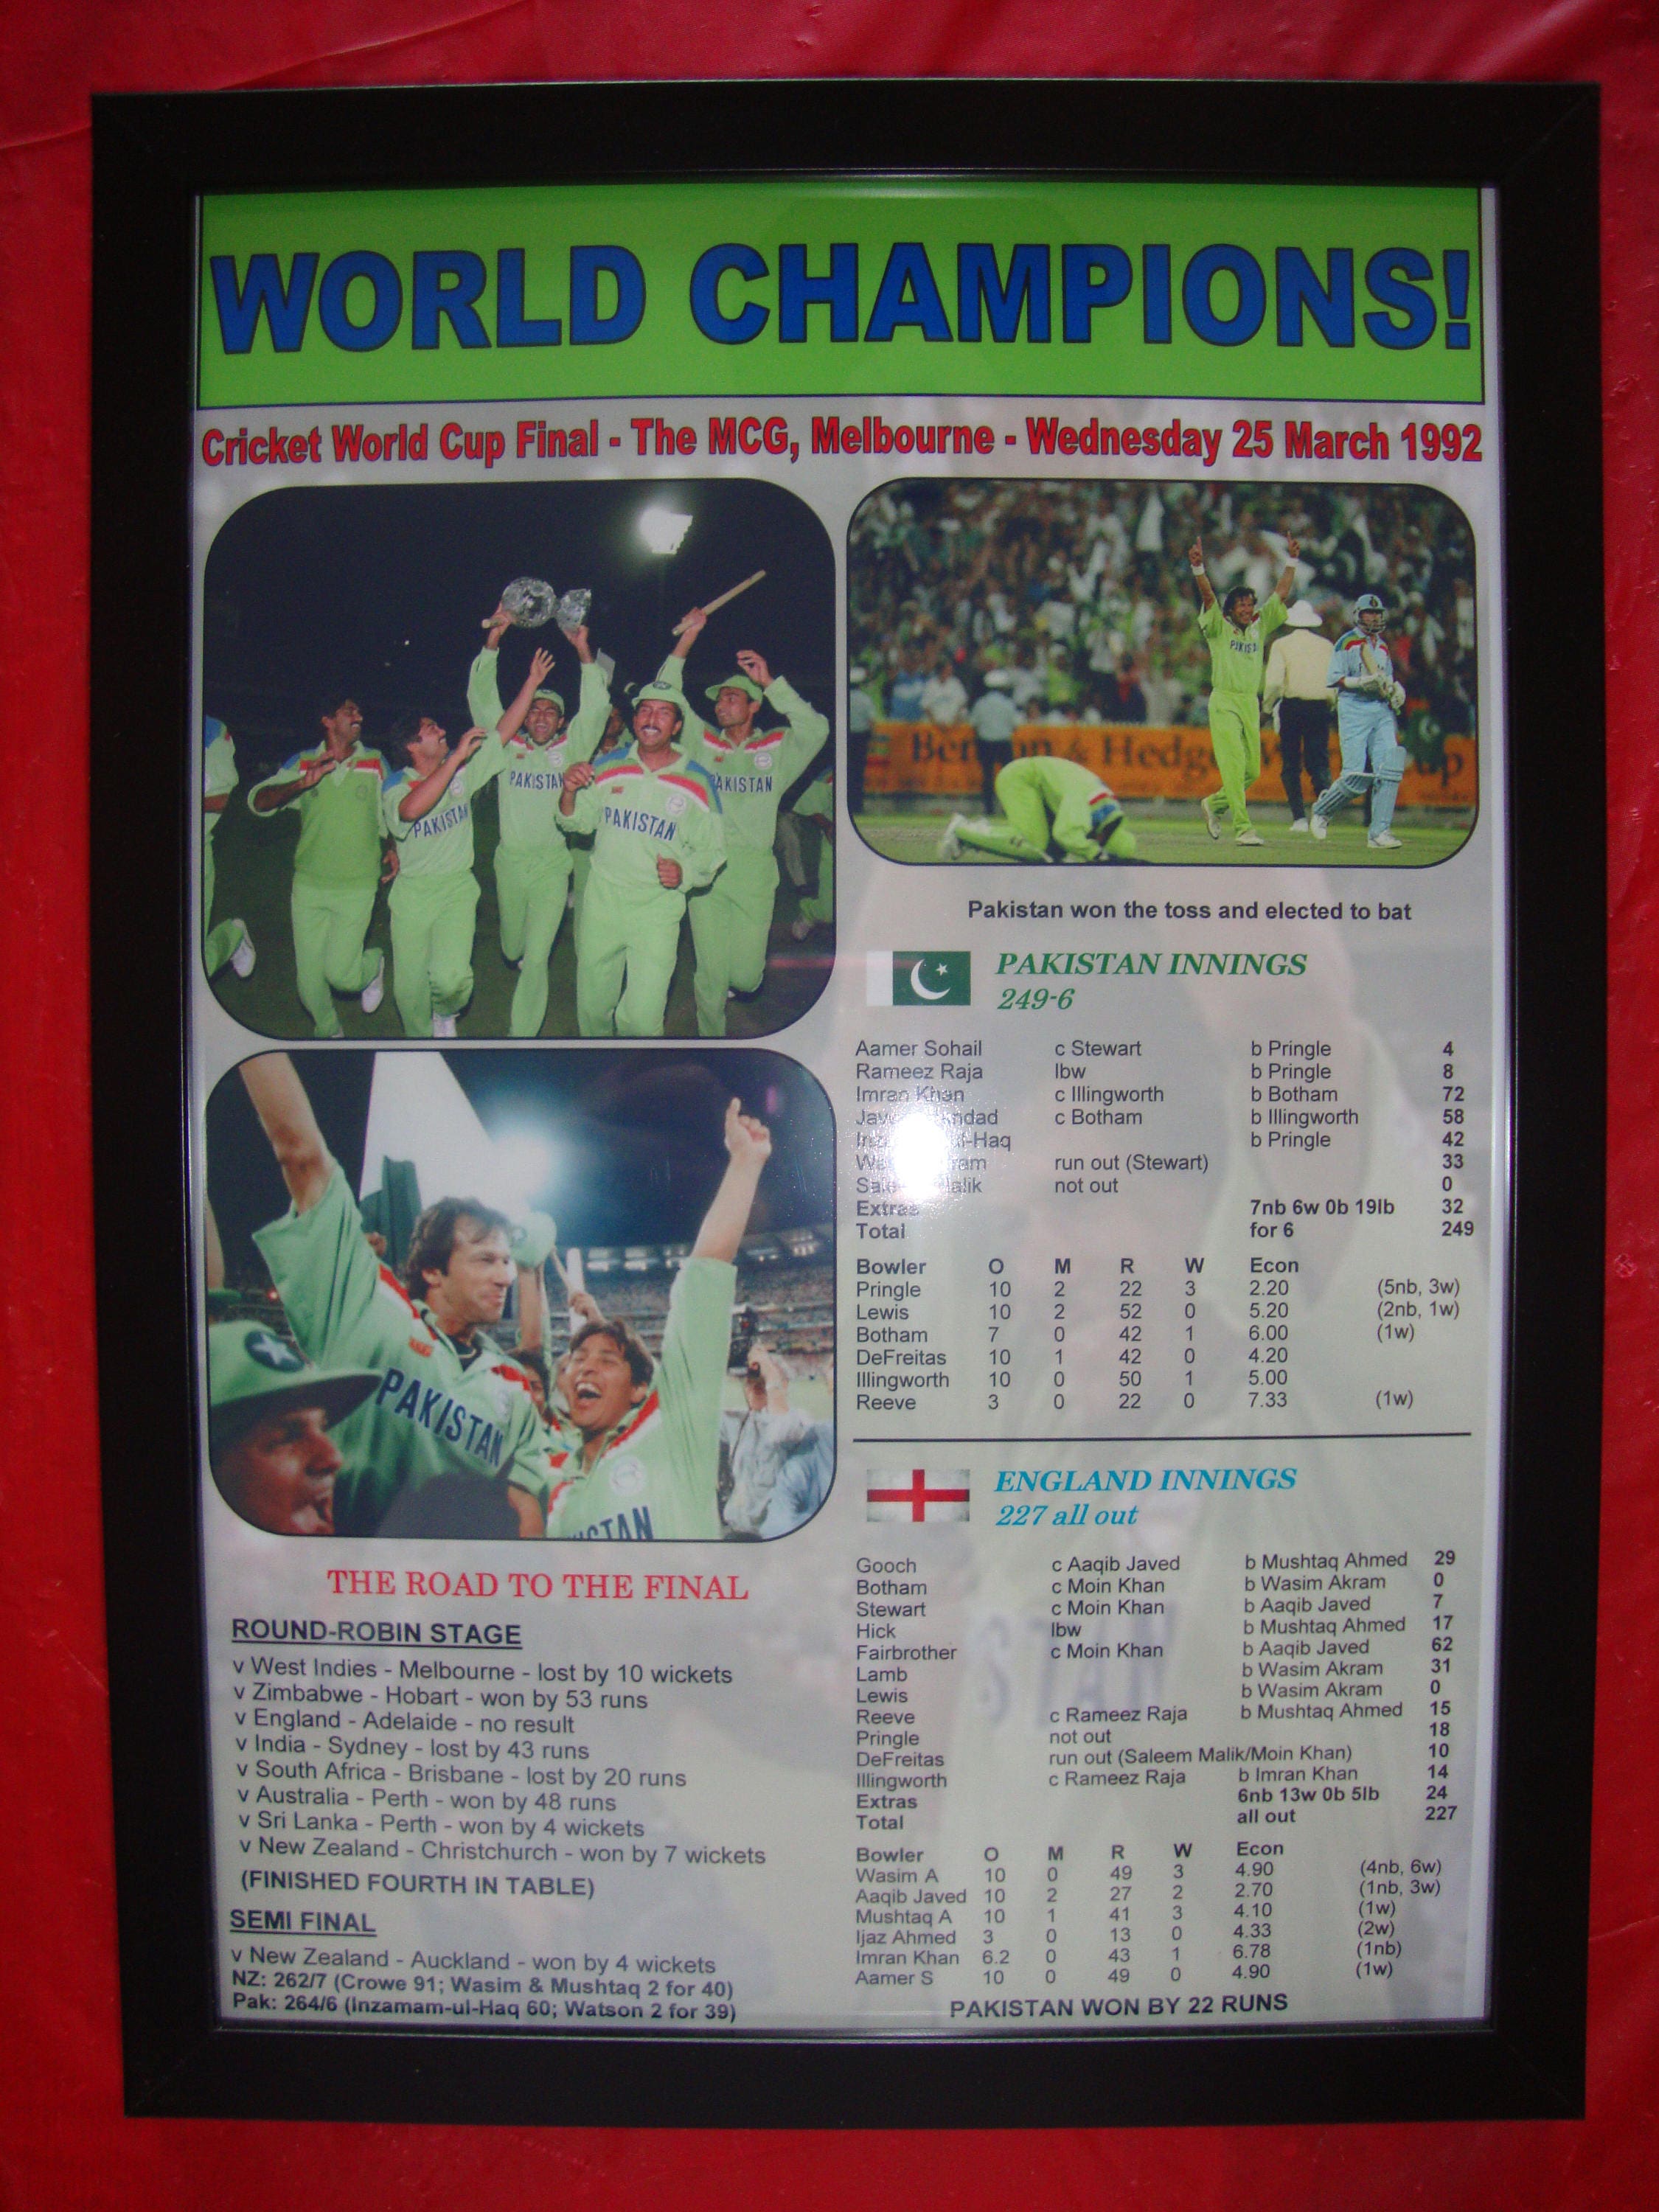 SRILANKA ICC CRICKET WORLD CUP 1992 NATIONAL RETRO MEMORABILIA JERSEY POLO